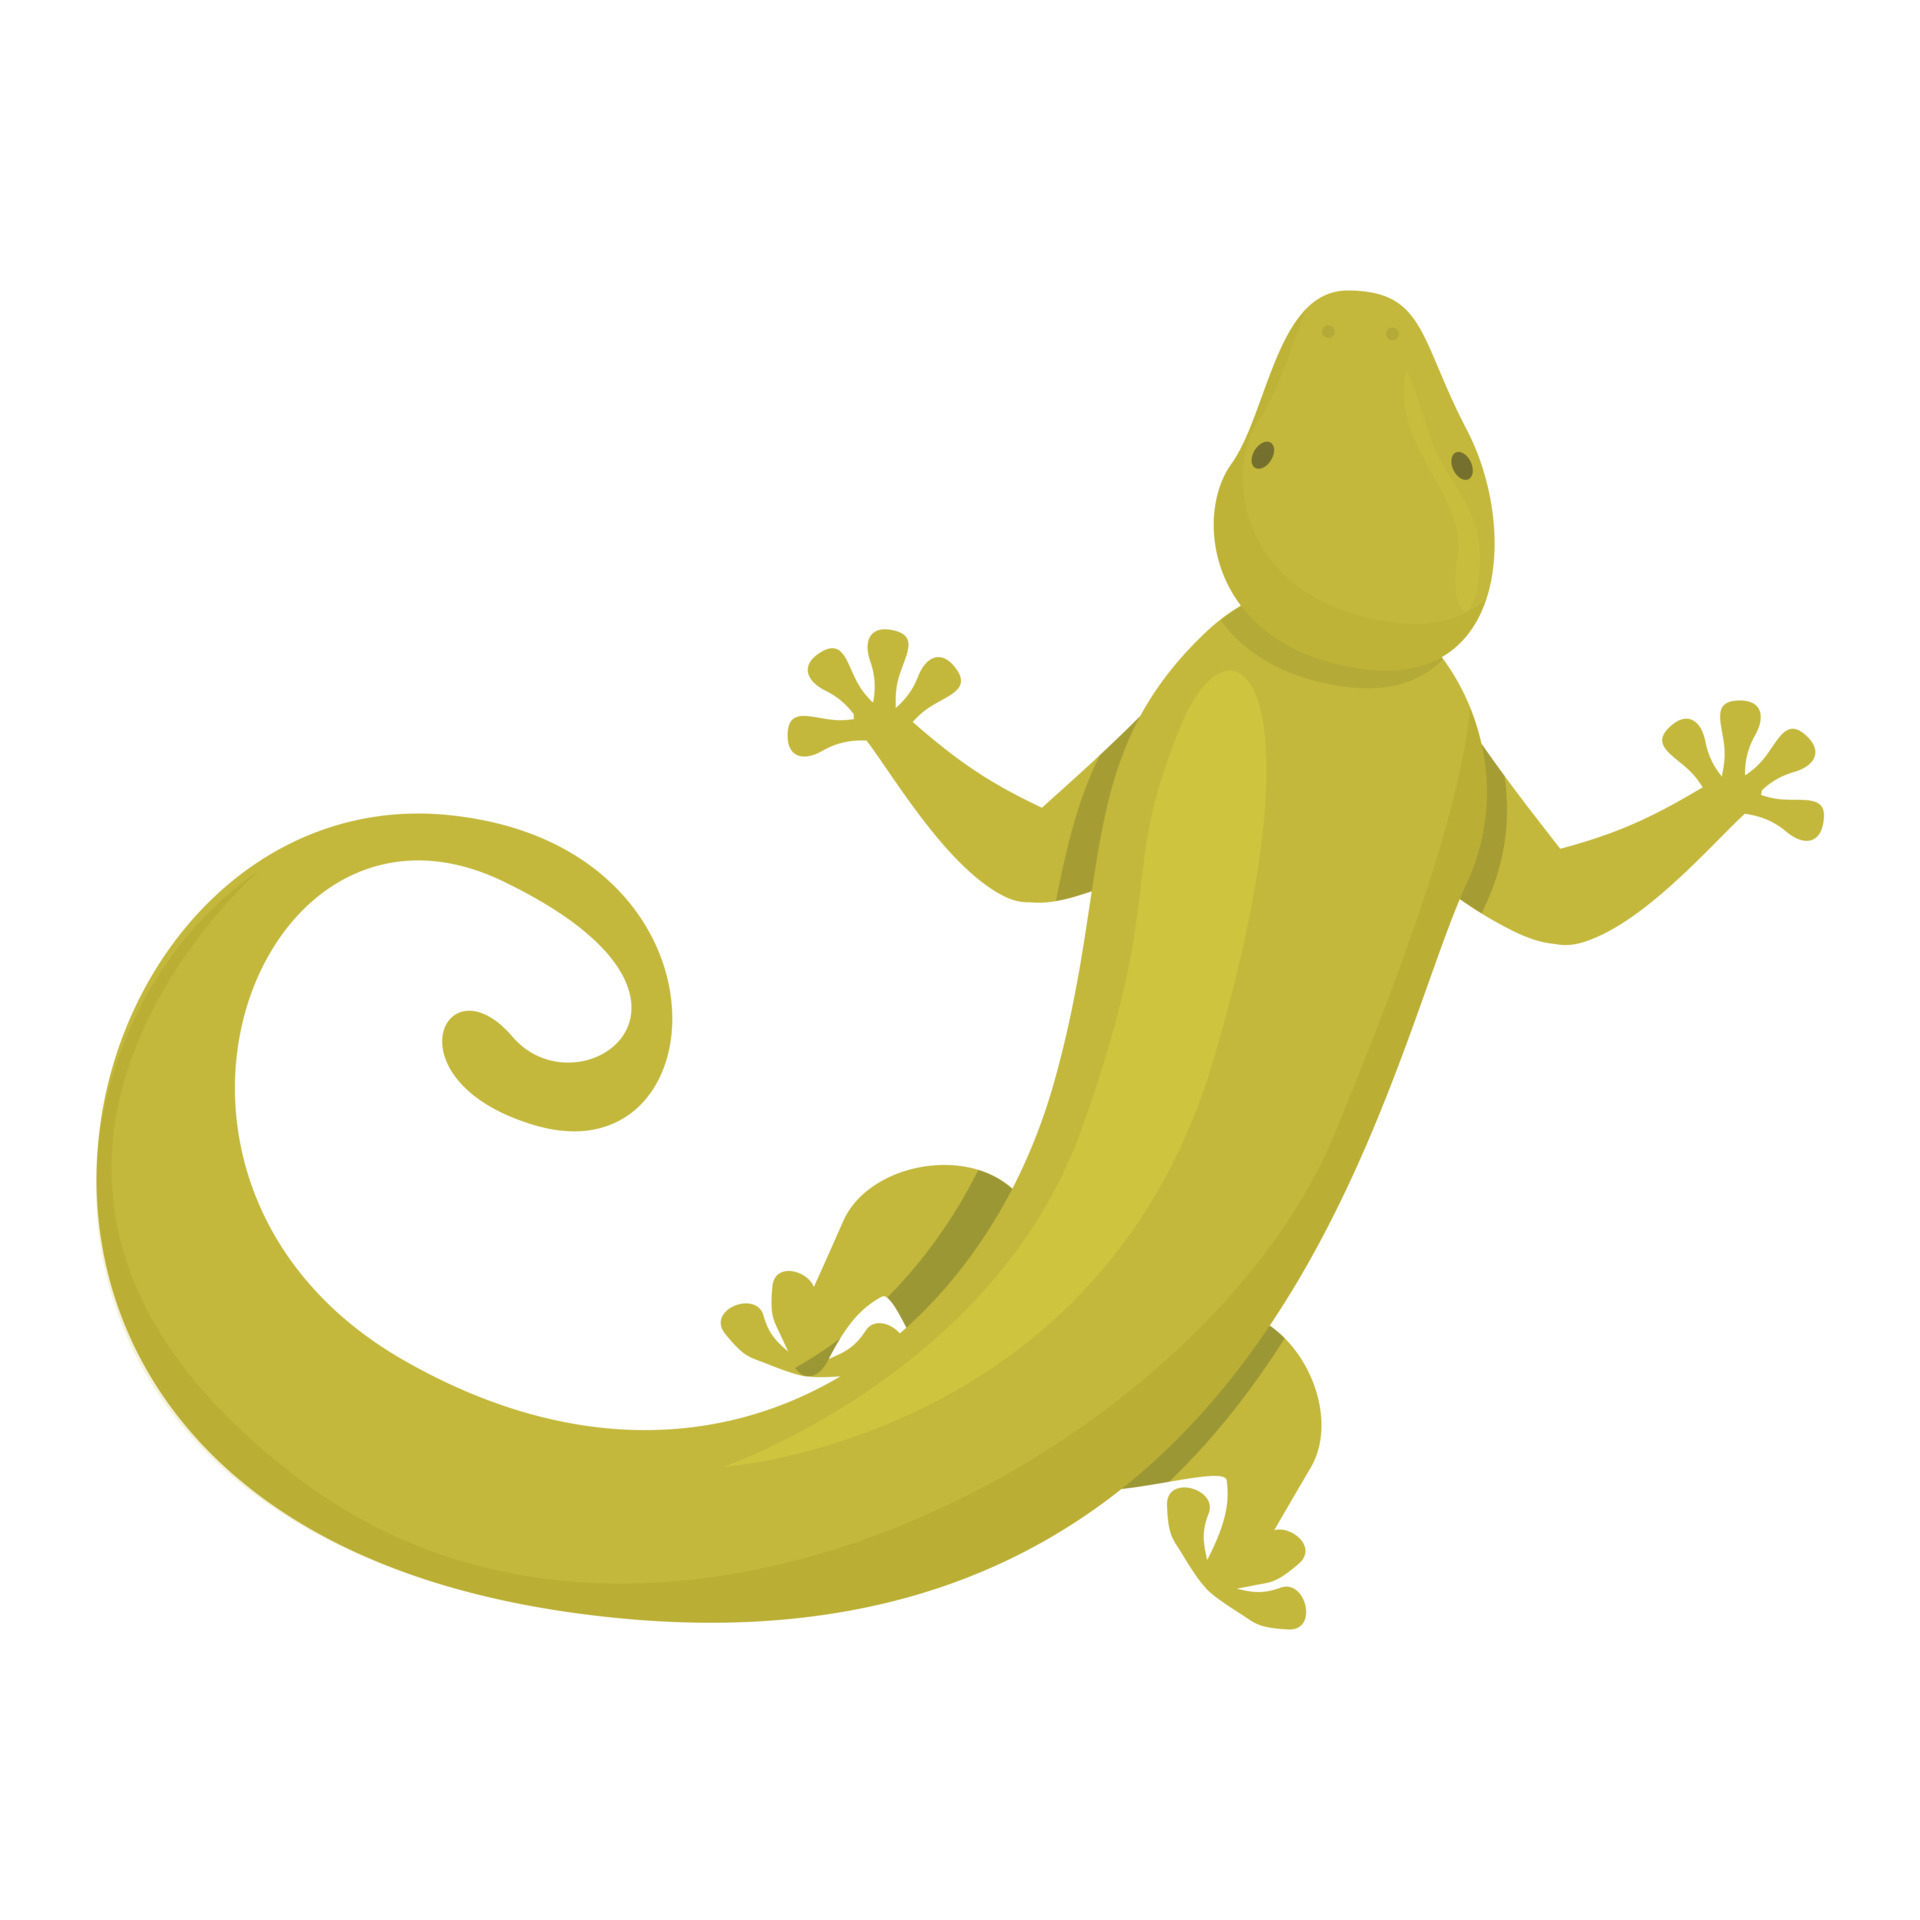 Tribal reptile icon cartoon vector. Gecko lizard 14359986 Vector Art at  Vecteezy